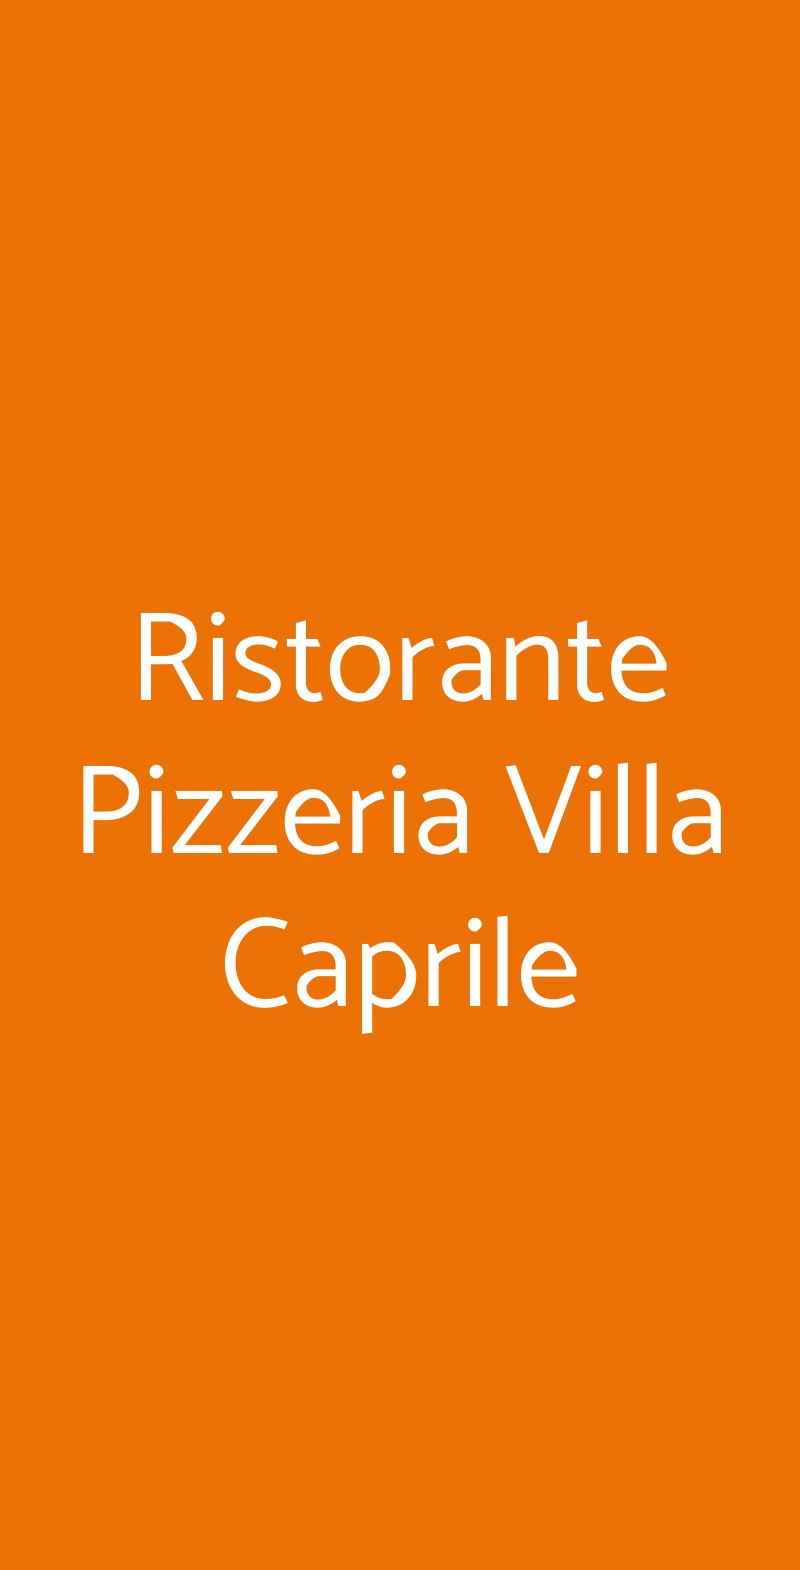 Ristorante Pizzeria Villa Caprile Massa Lubrense menù 1 pagina